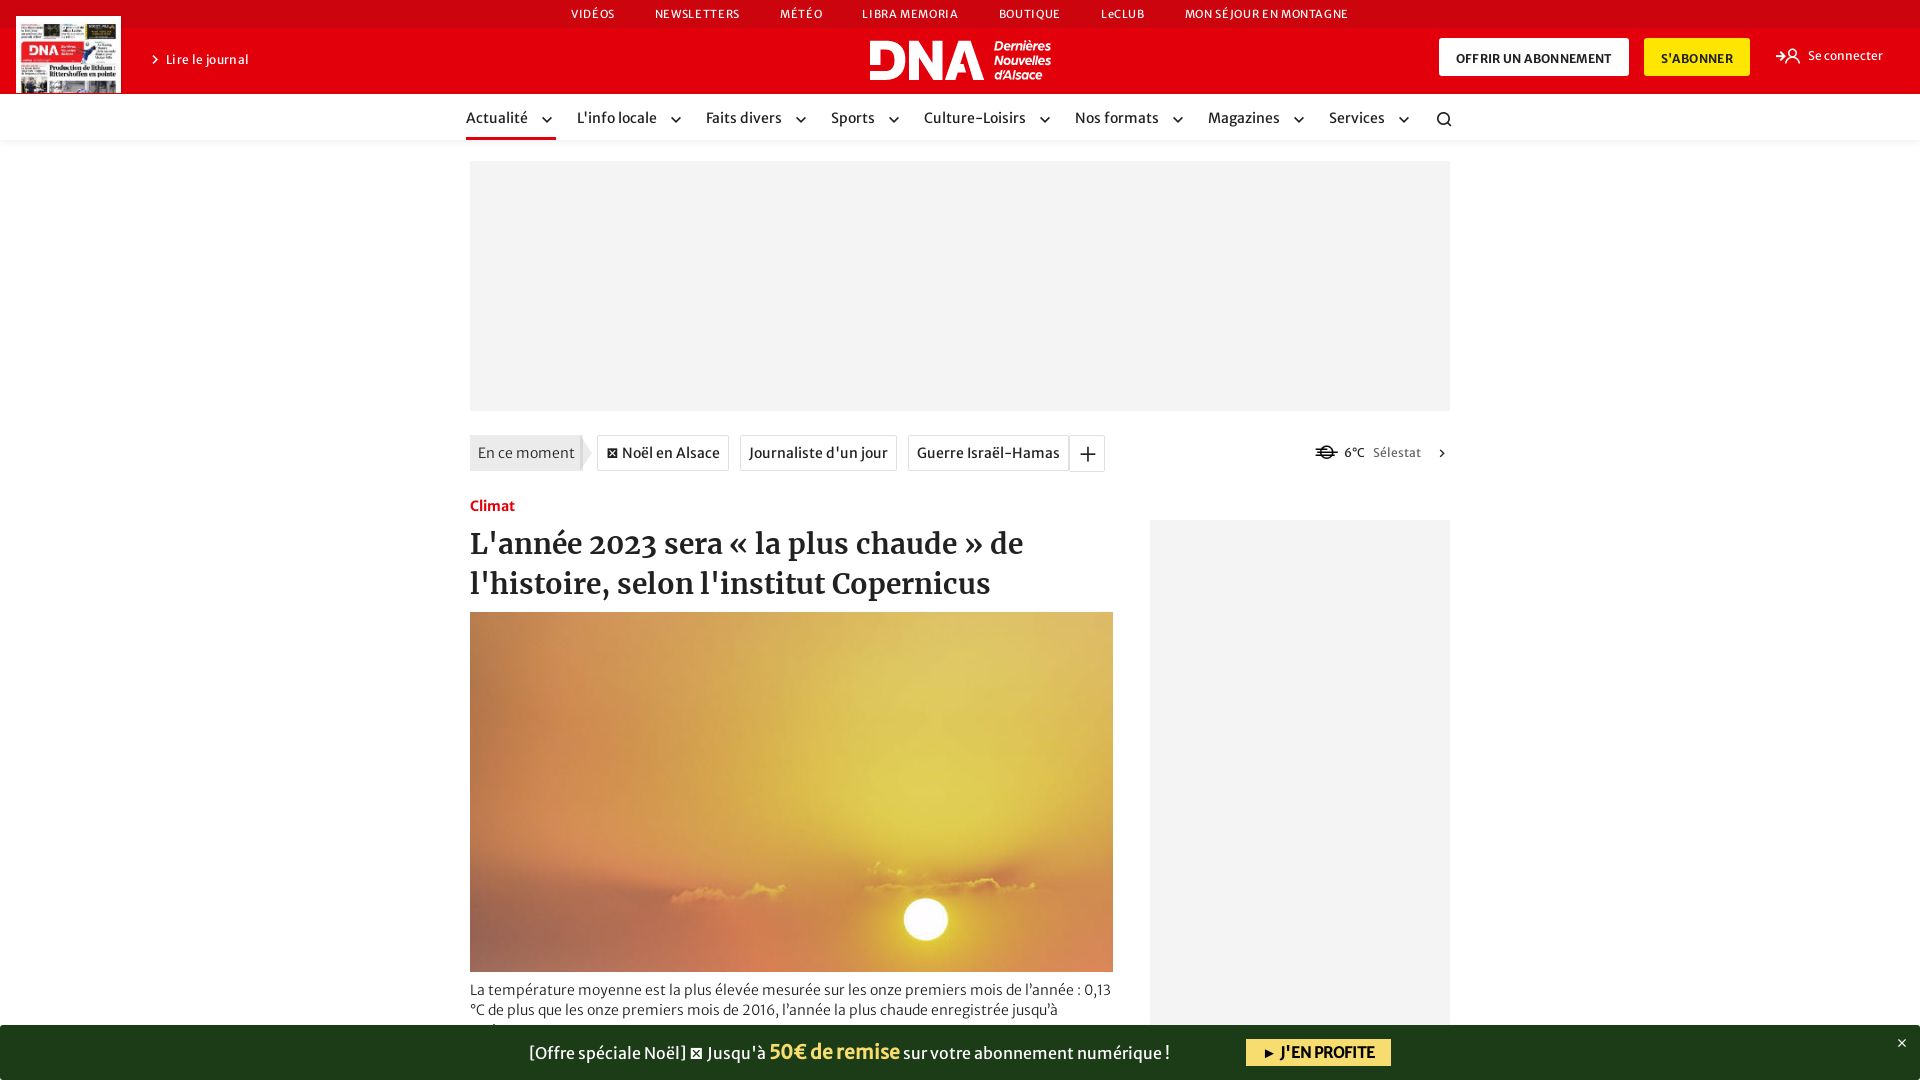 Stato del sito web dna.fr è   ONLINE